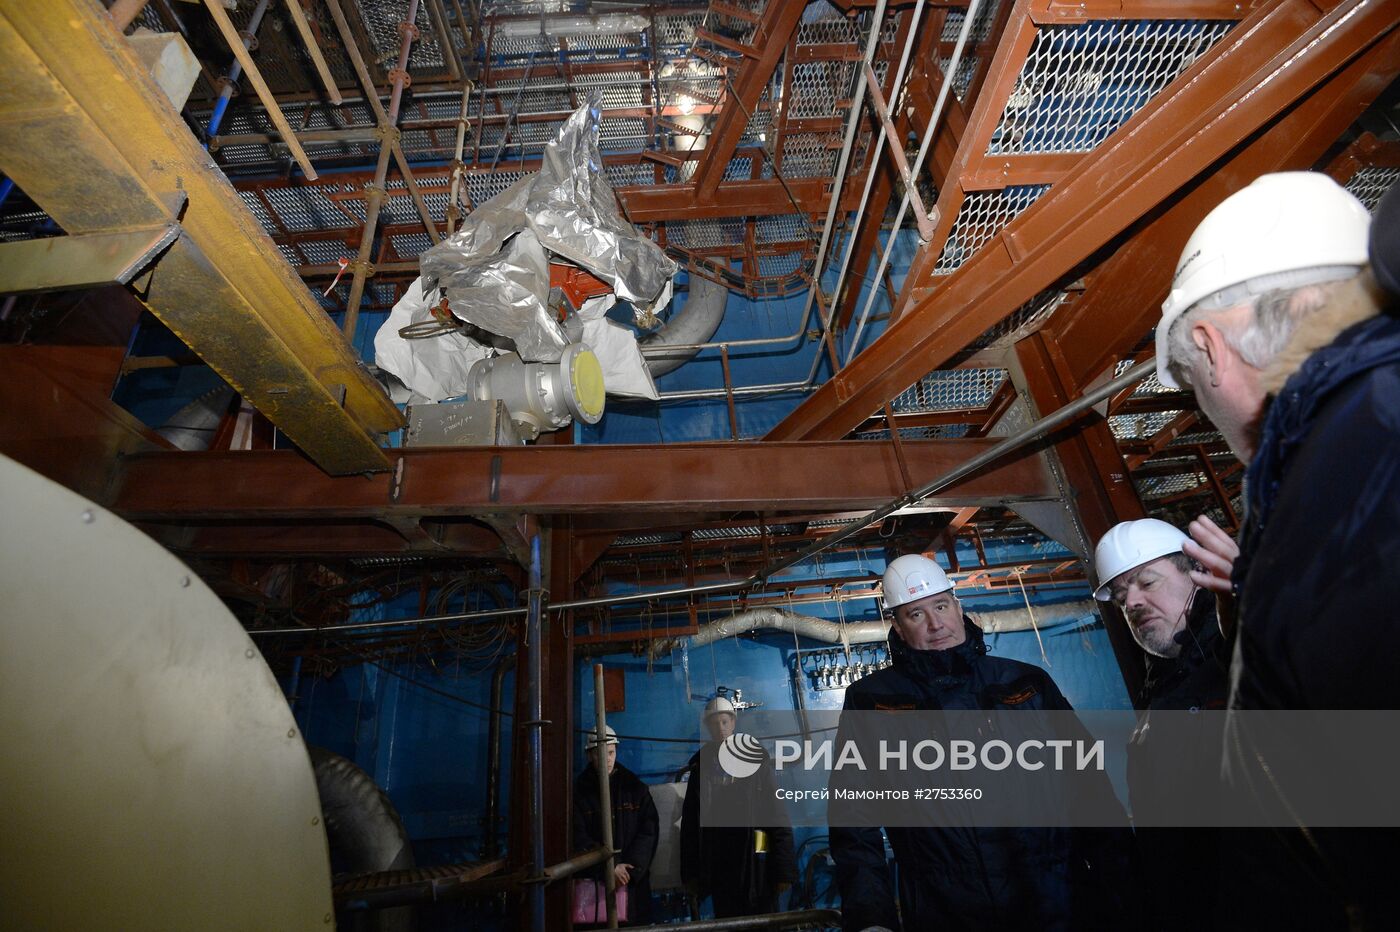 Вице-премьер Д.Рогозин посетил ООО "Балтийский завод" в Санкт-Петербурге